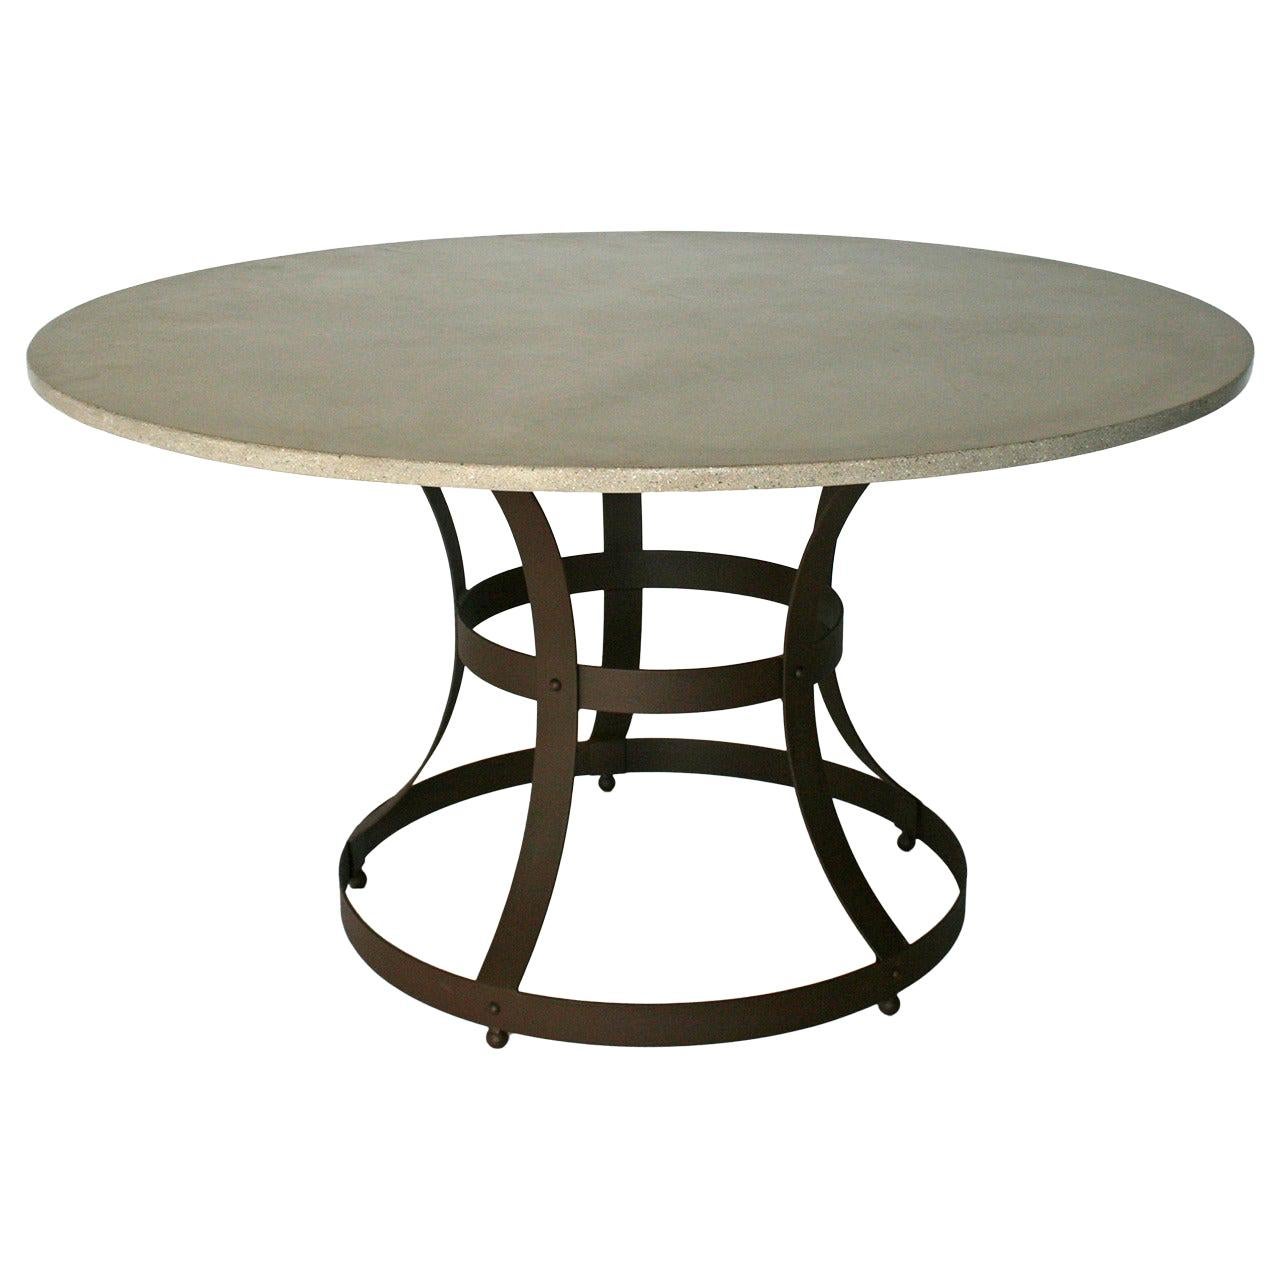 James de Wulf Concrete Hourglass Dining Table, 72" - Disponible maintenant